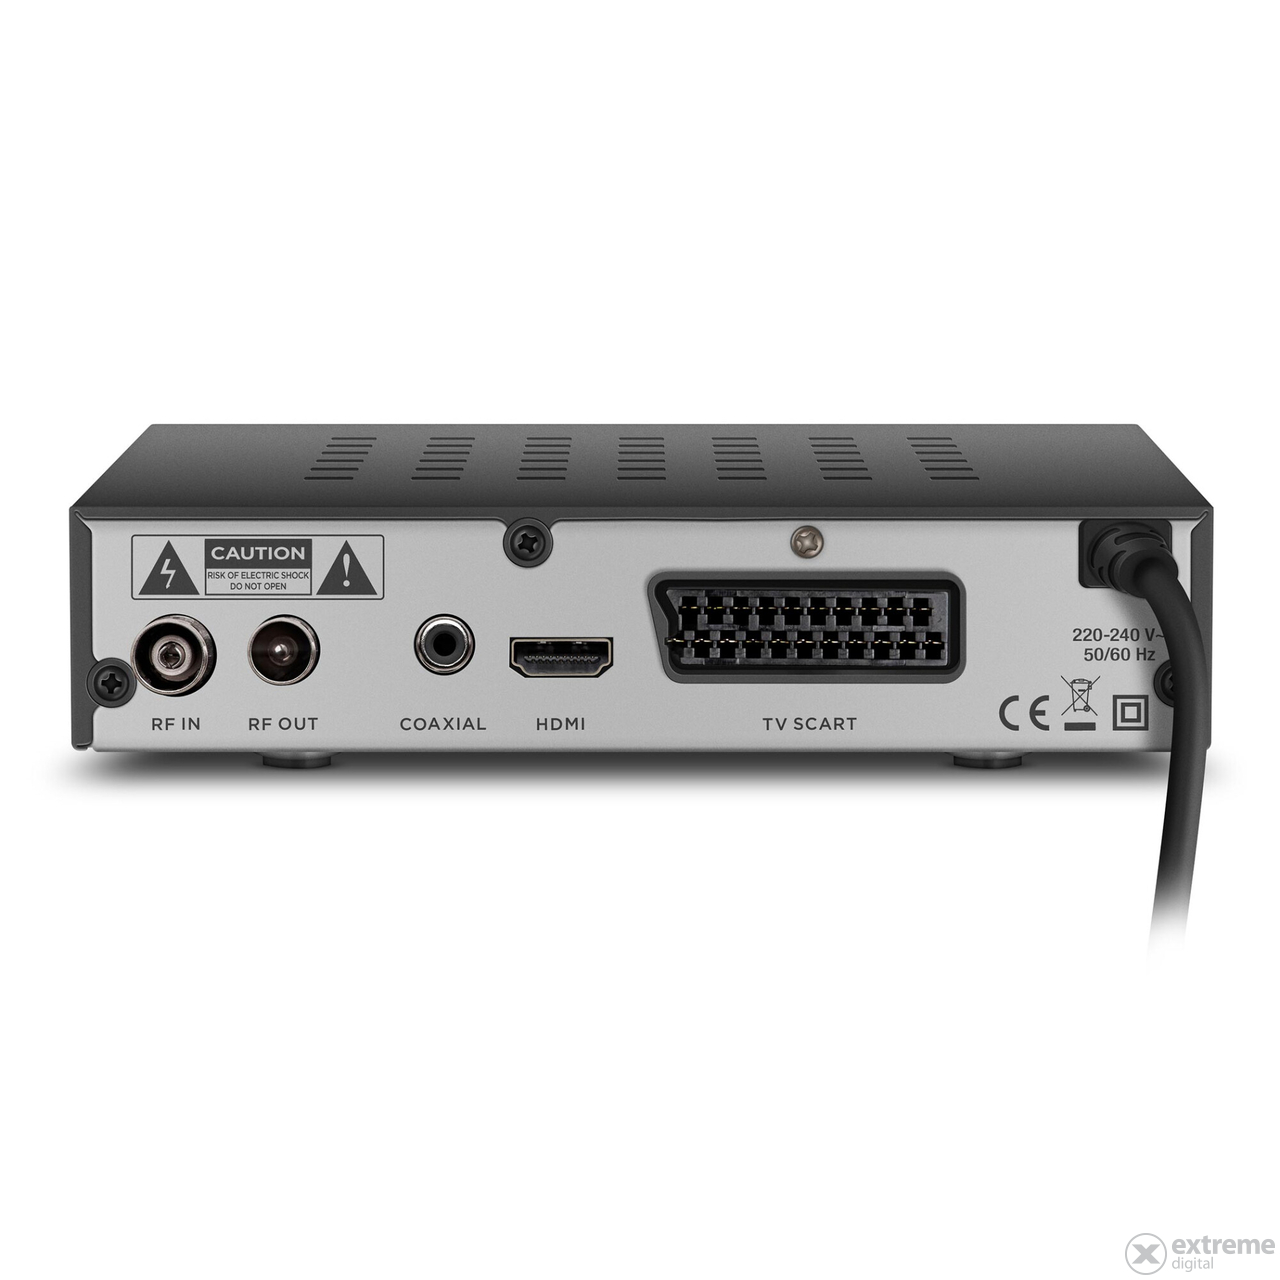 Sencor SDB 5005T DVB sprejemnik